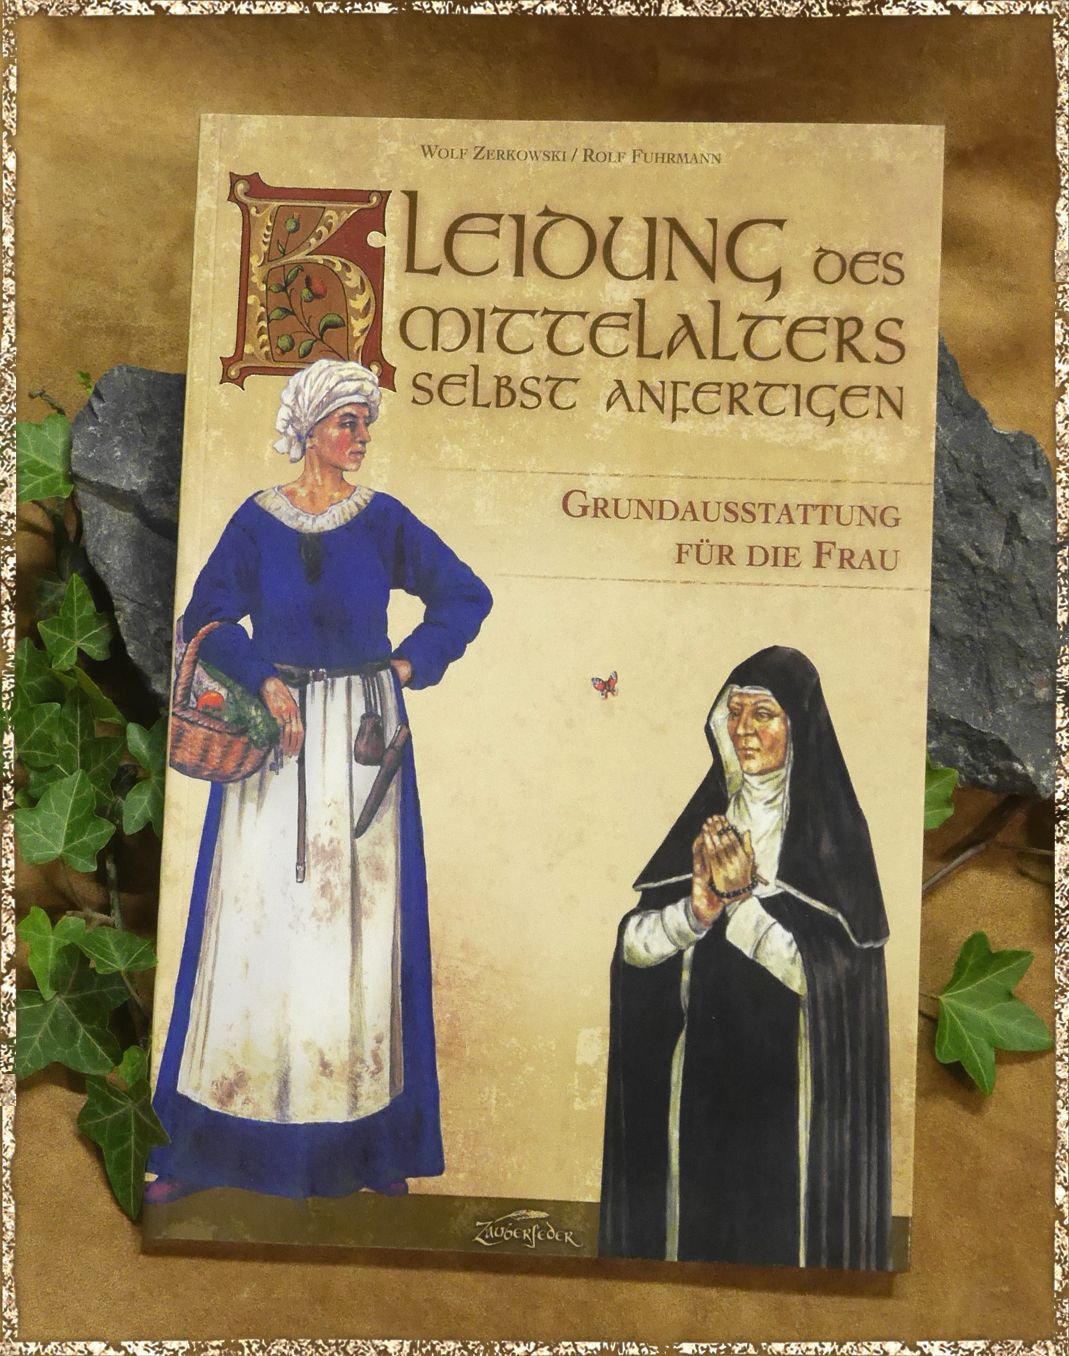 Kleidung des Mittelalters selbst anfertigen Grundausstattung für die Frau